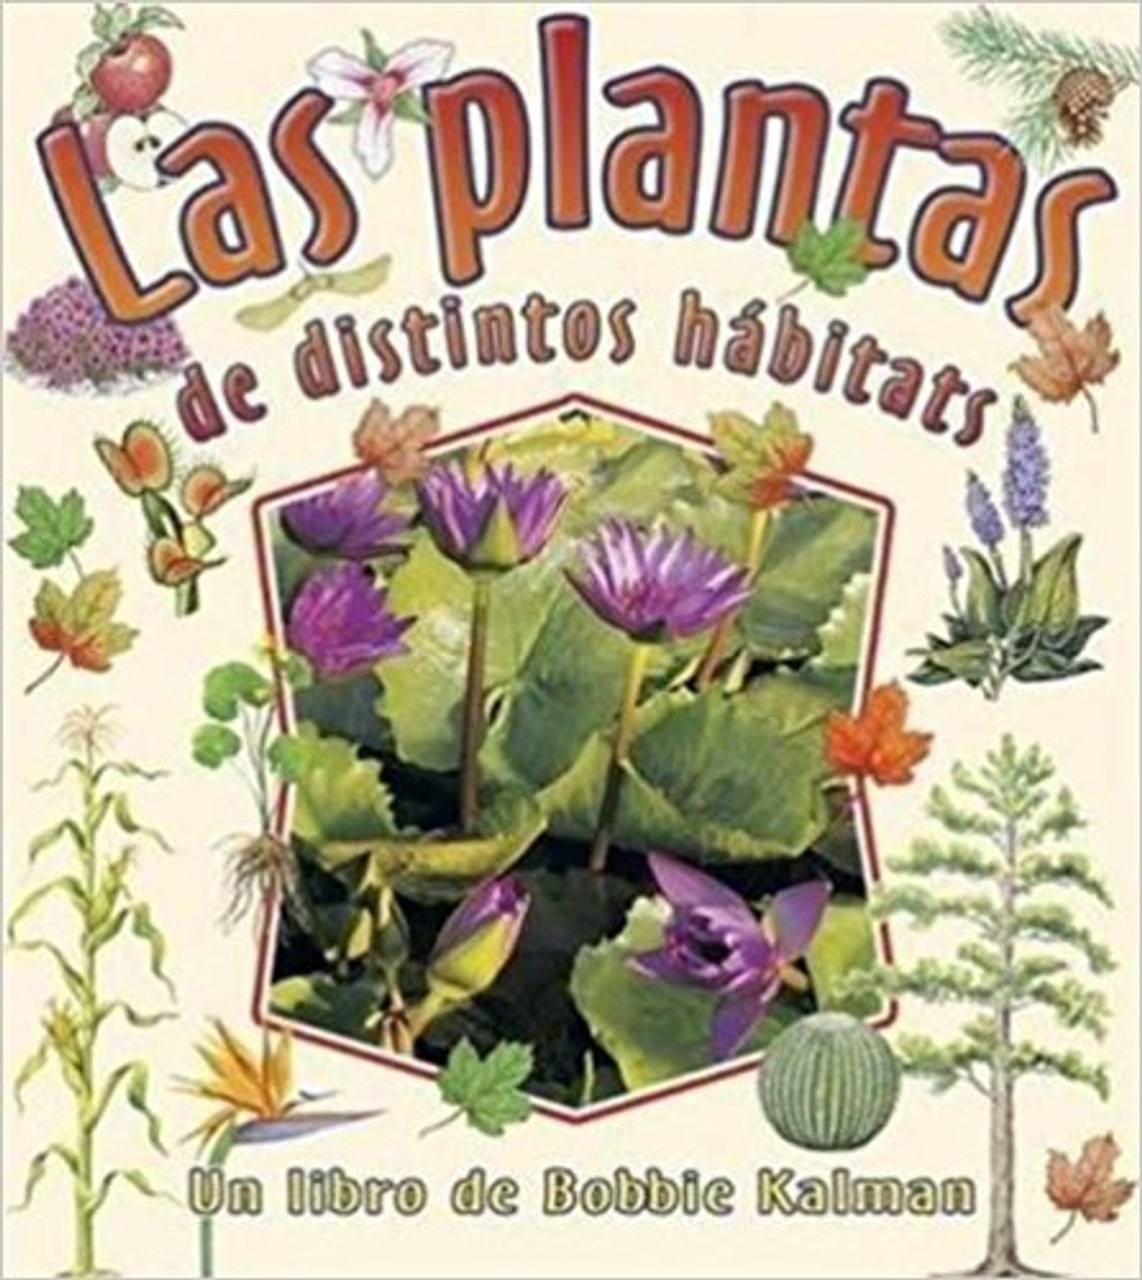 Las Plantas de Distintos Habitats by Bobbie Kalman